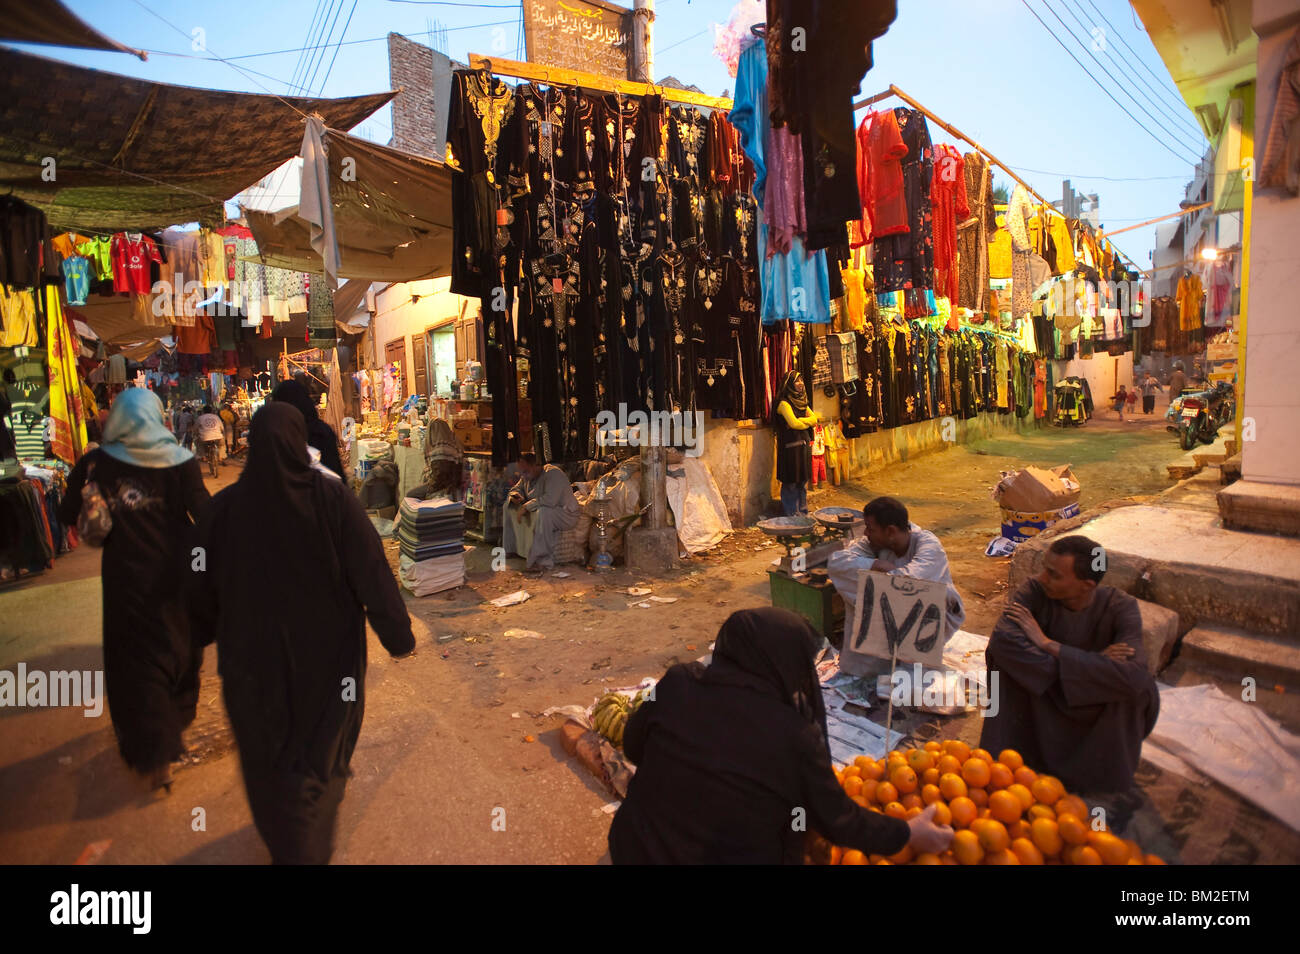 El Souk market, Luxor, Egypt Stock Photo